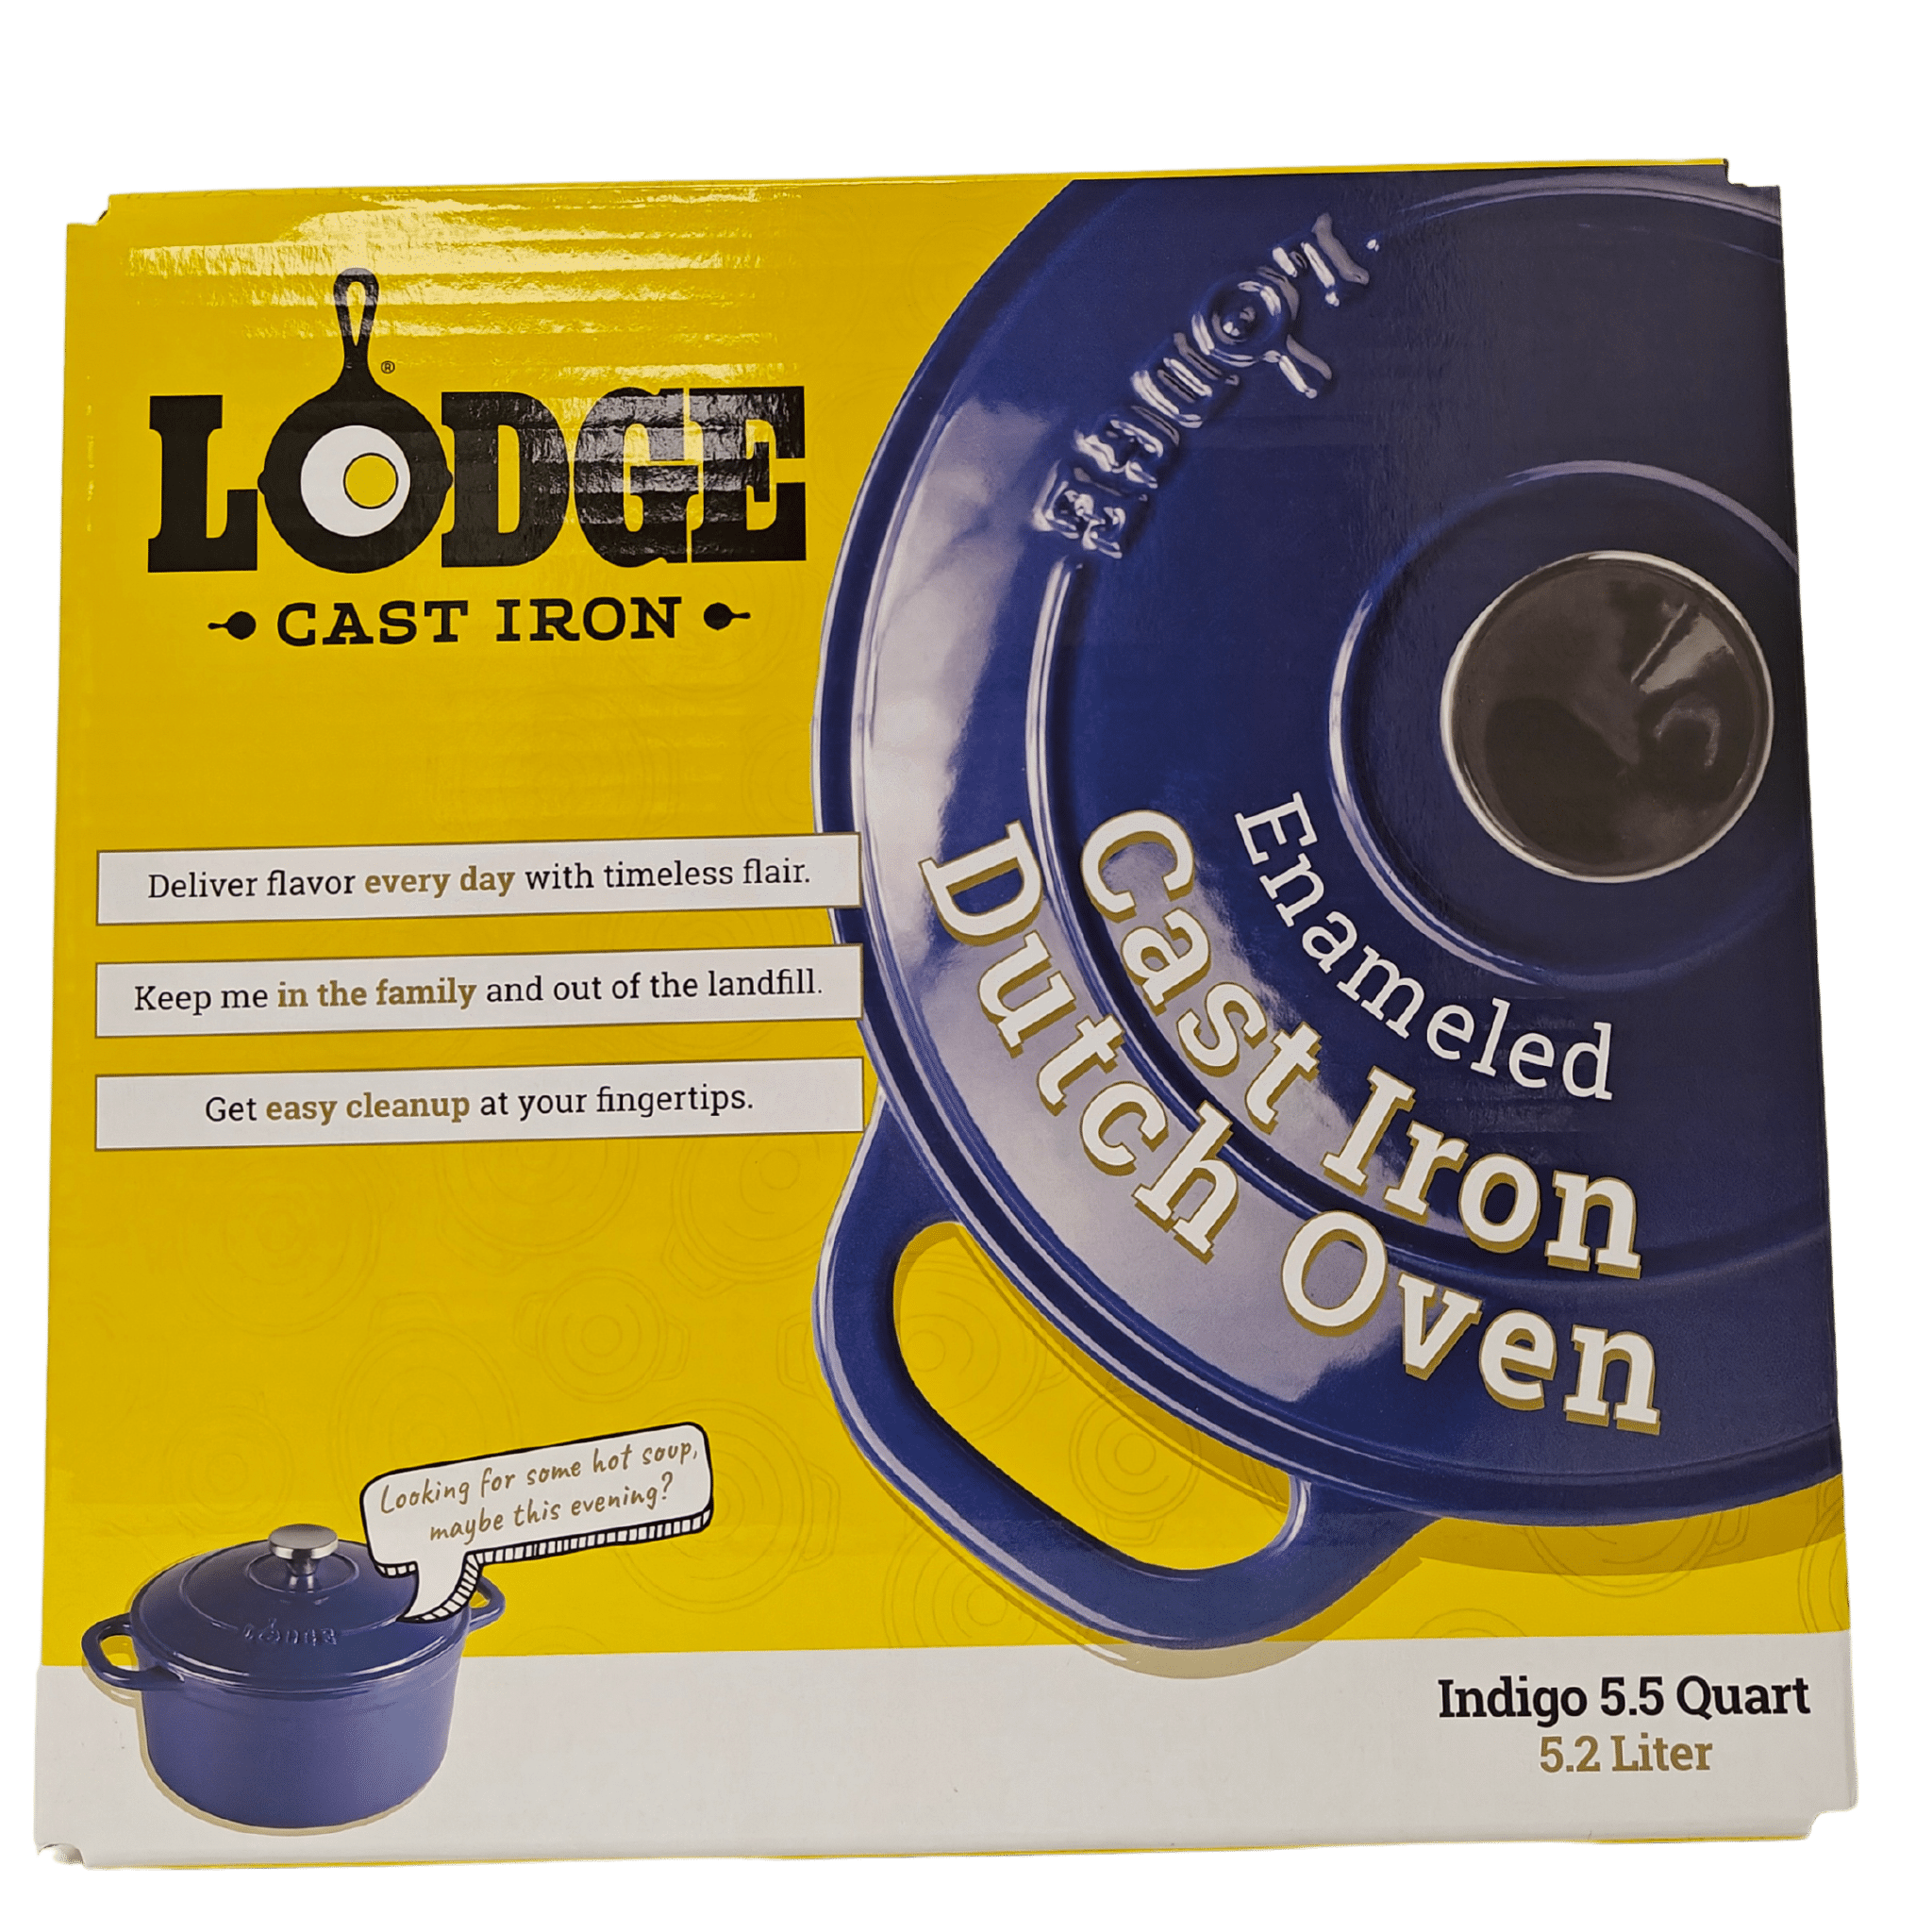 Lodge 5qt Cast Iron Dutch Oven